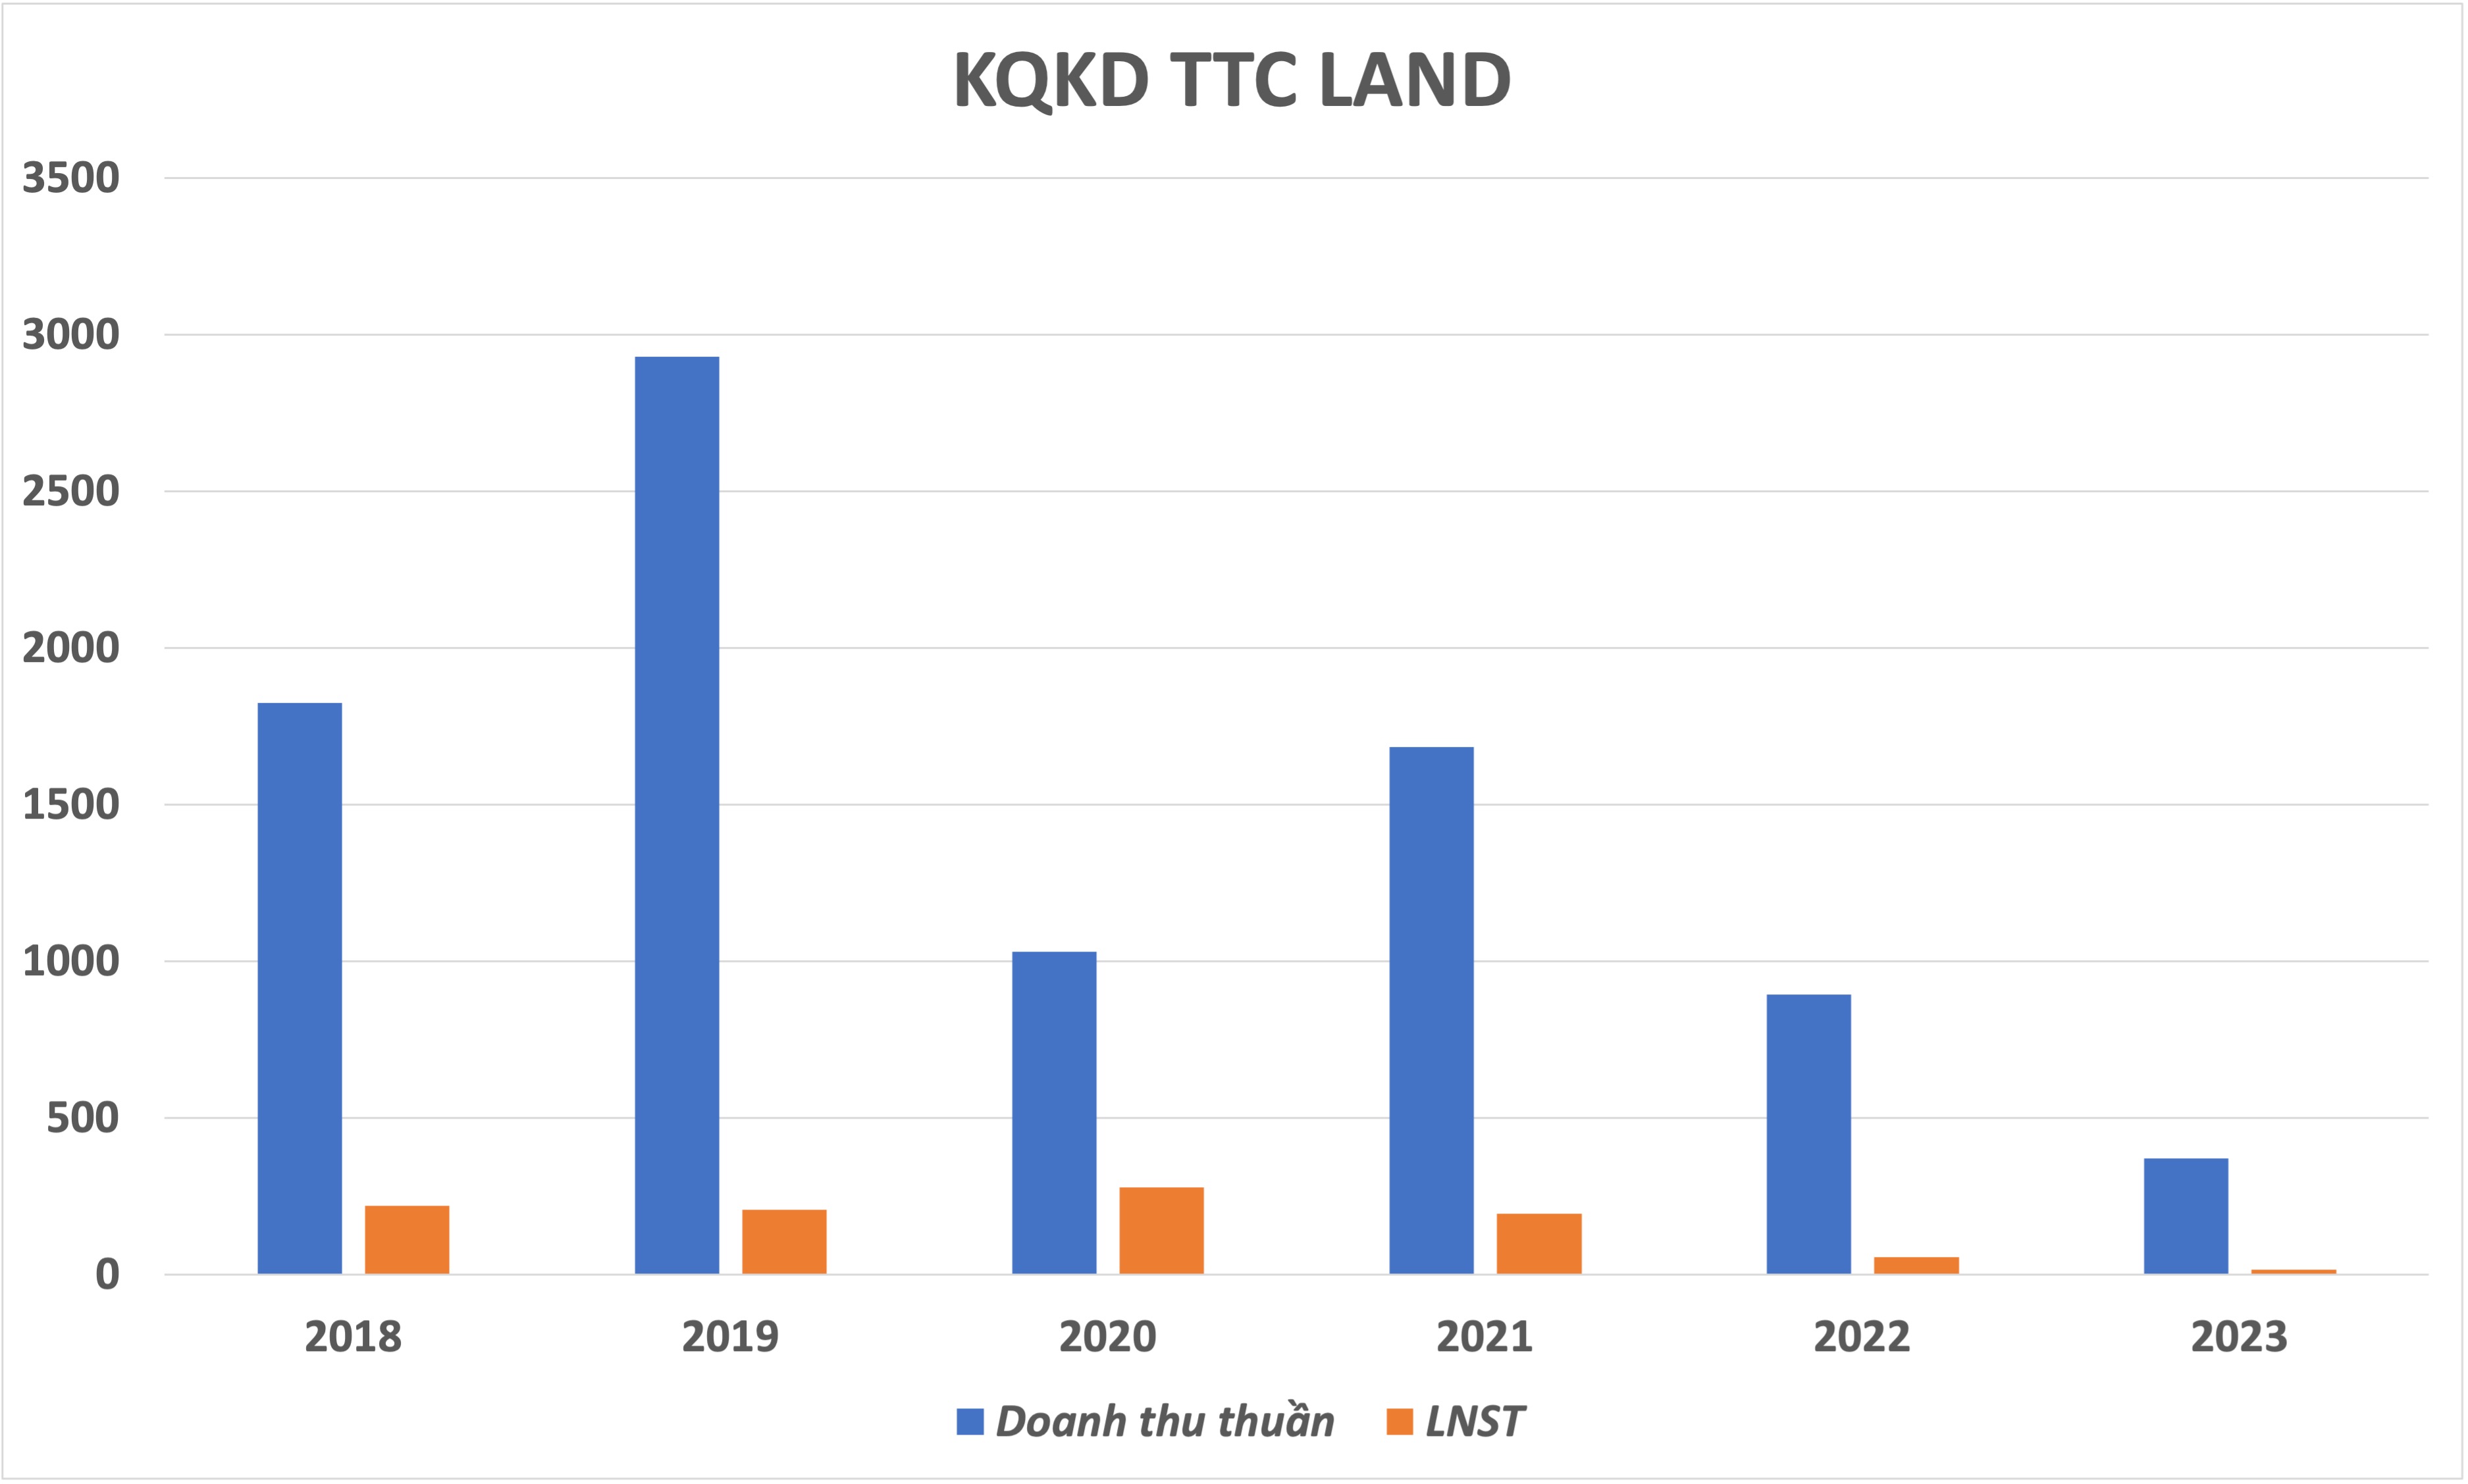 Biên lợi nhuận gộp của TTC Land tăng nhẹ nhờ đa dạng nguồn thu

- Ảnh 1.